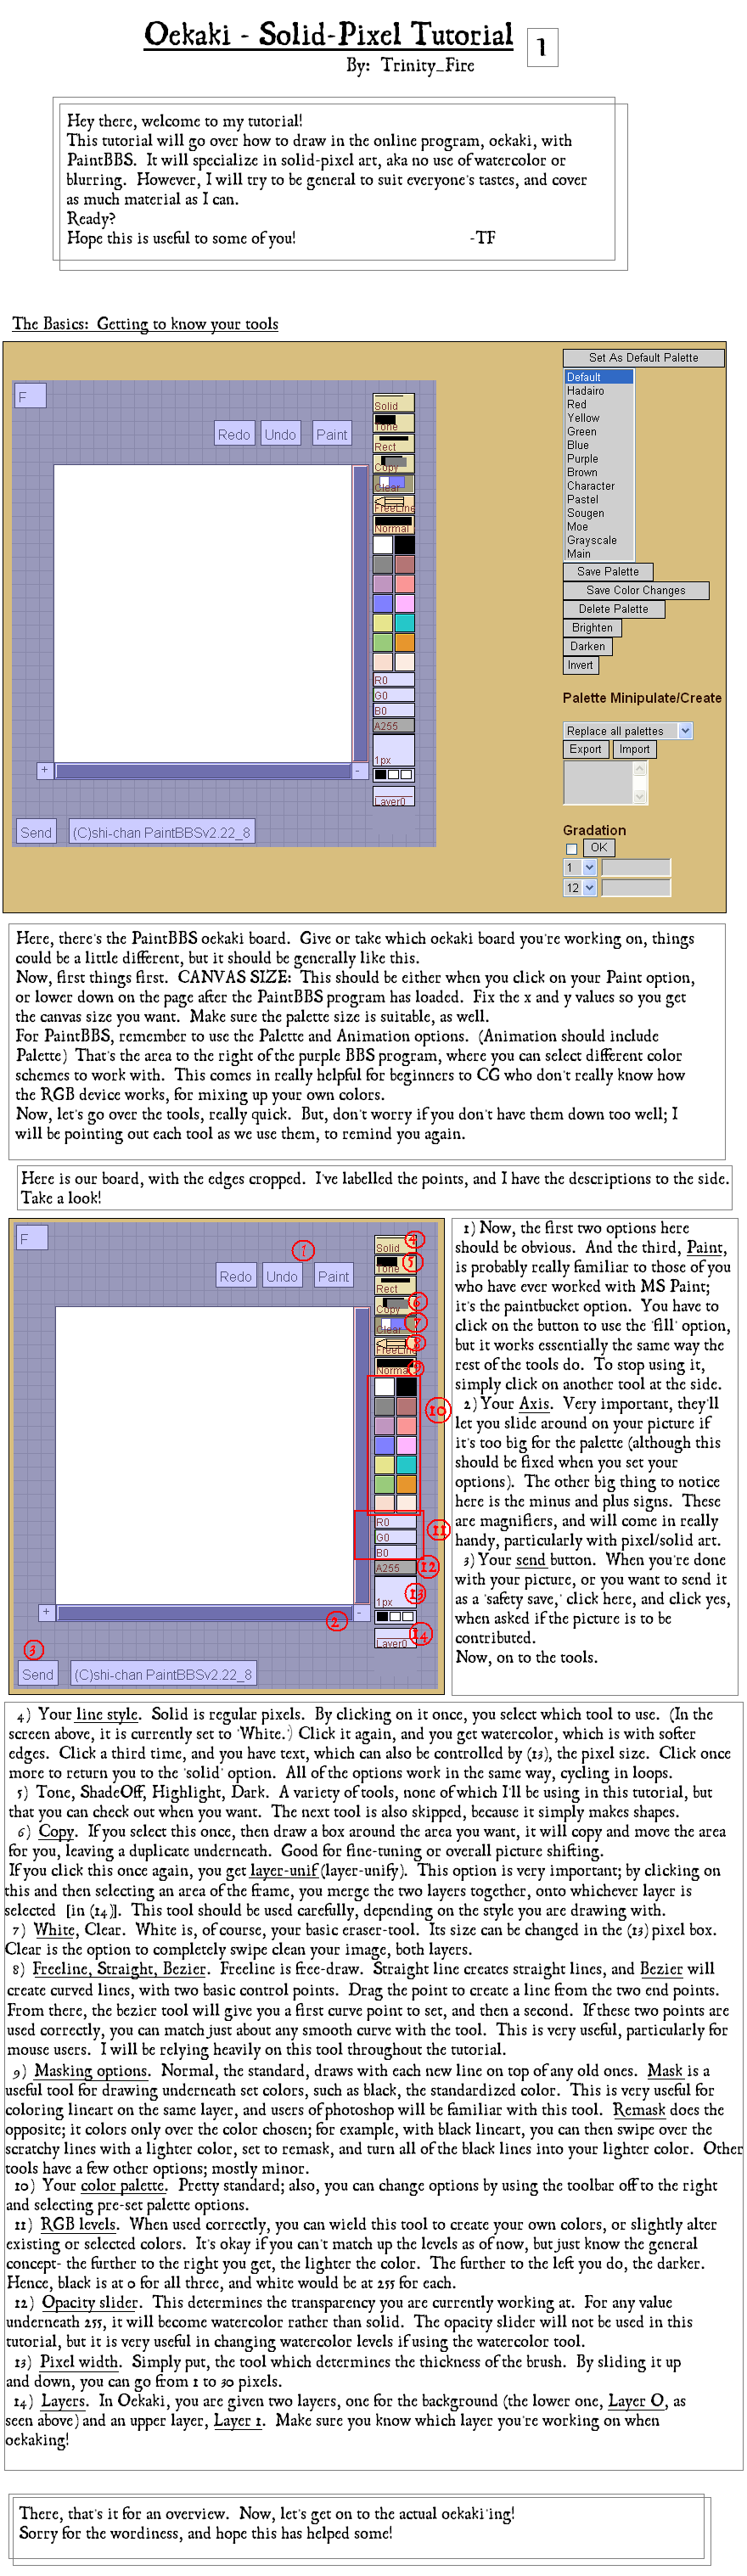 Oekaki Solid Pixel Tutorial - Part 1 by Trinity_Fire